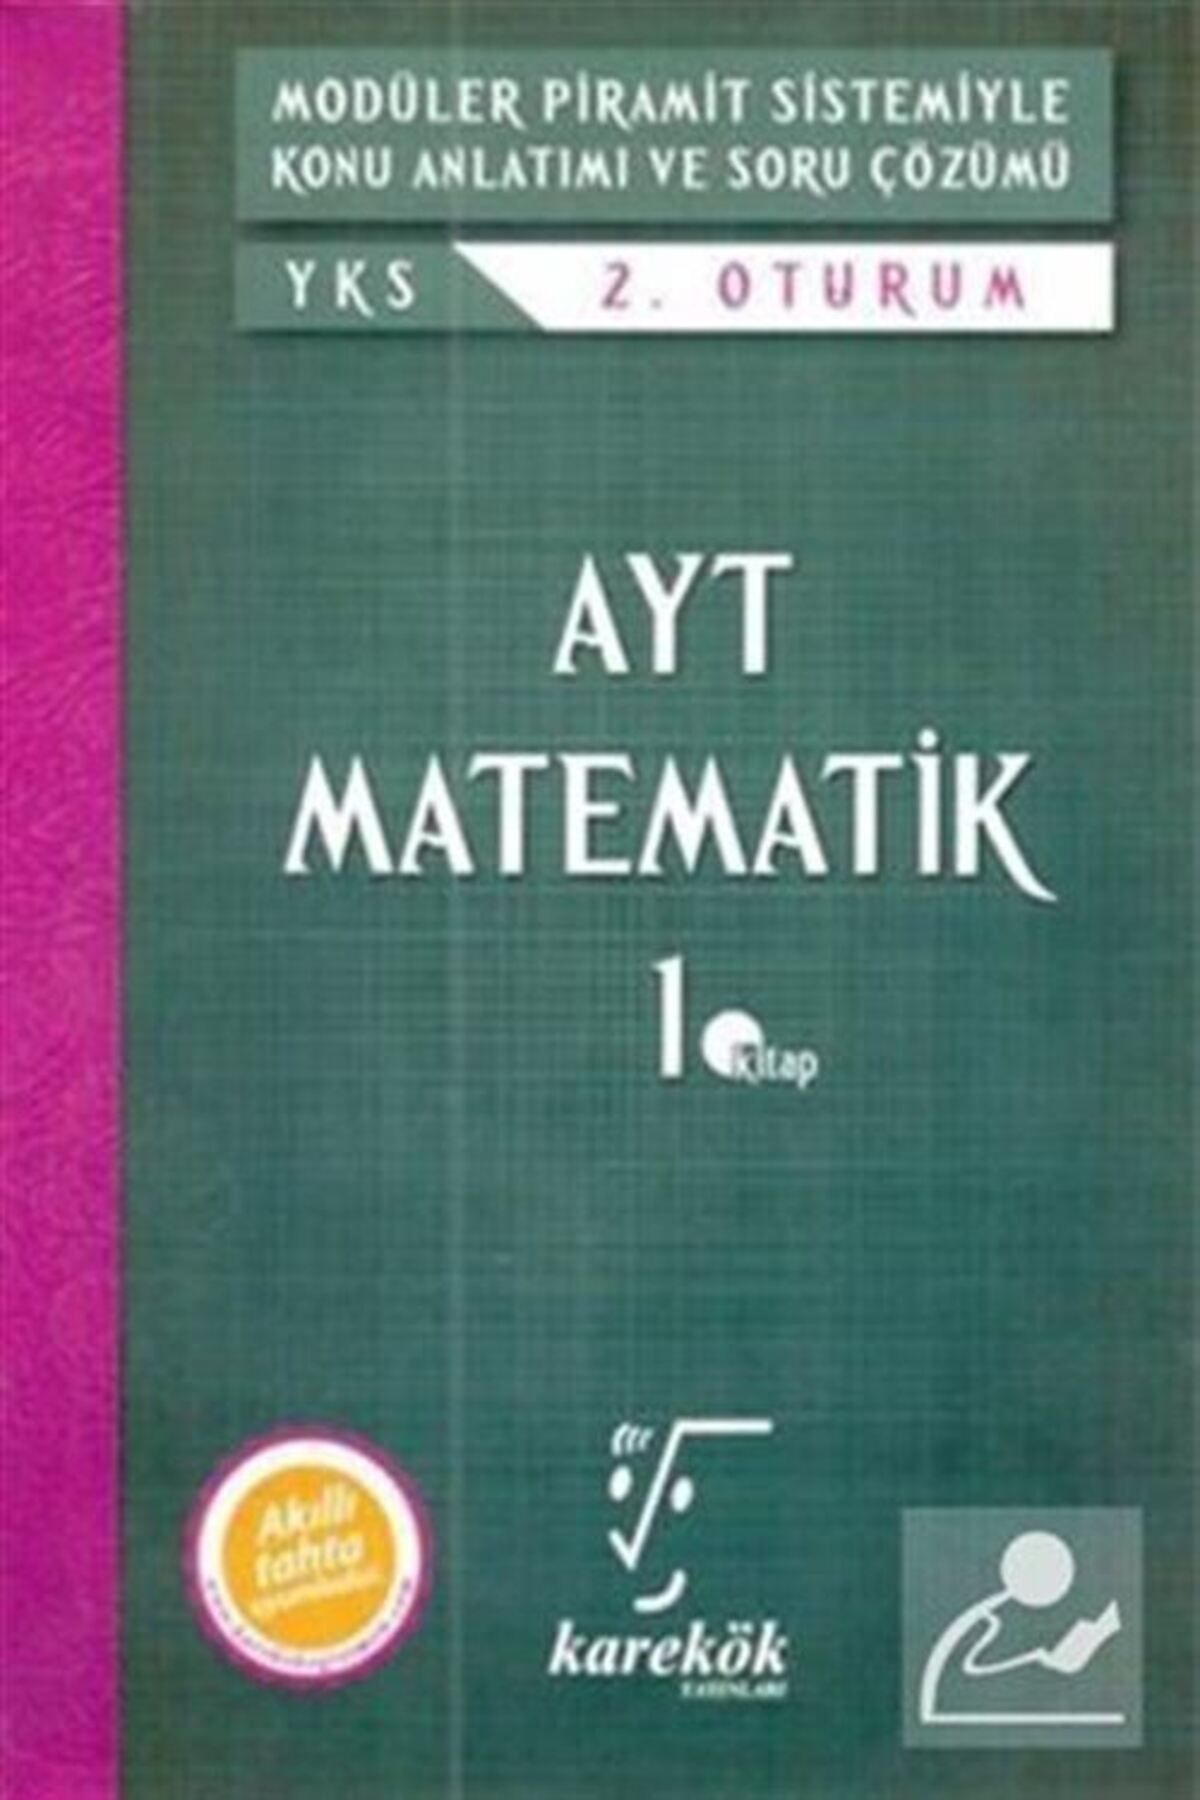 Karekök Yayınları Karekök Ayt Matematik Mps K.a Ve Soru Çözümü 1.kitap